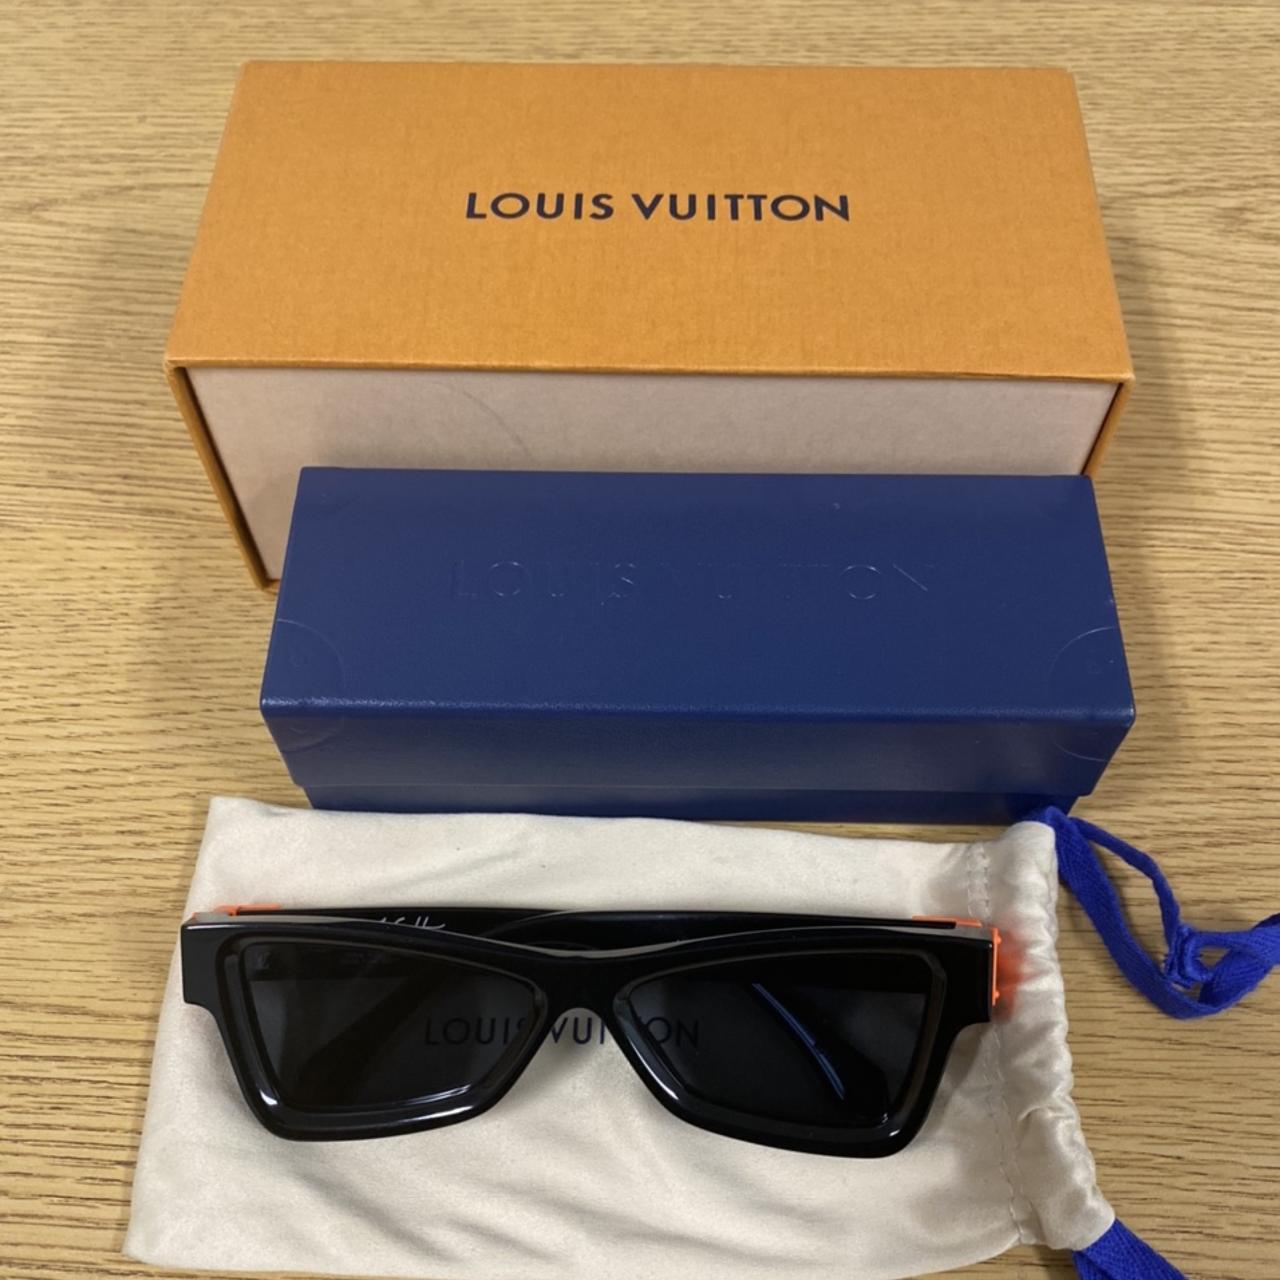 Virgil x Louis Vuitton Skeptical Sunglasses - Depop